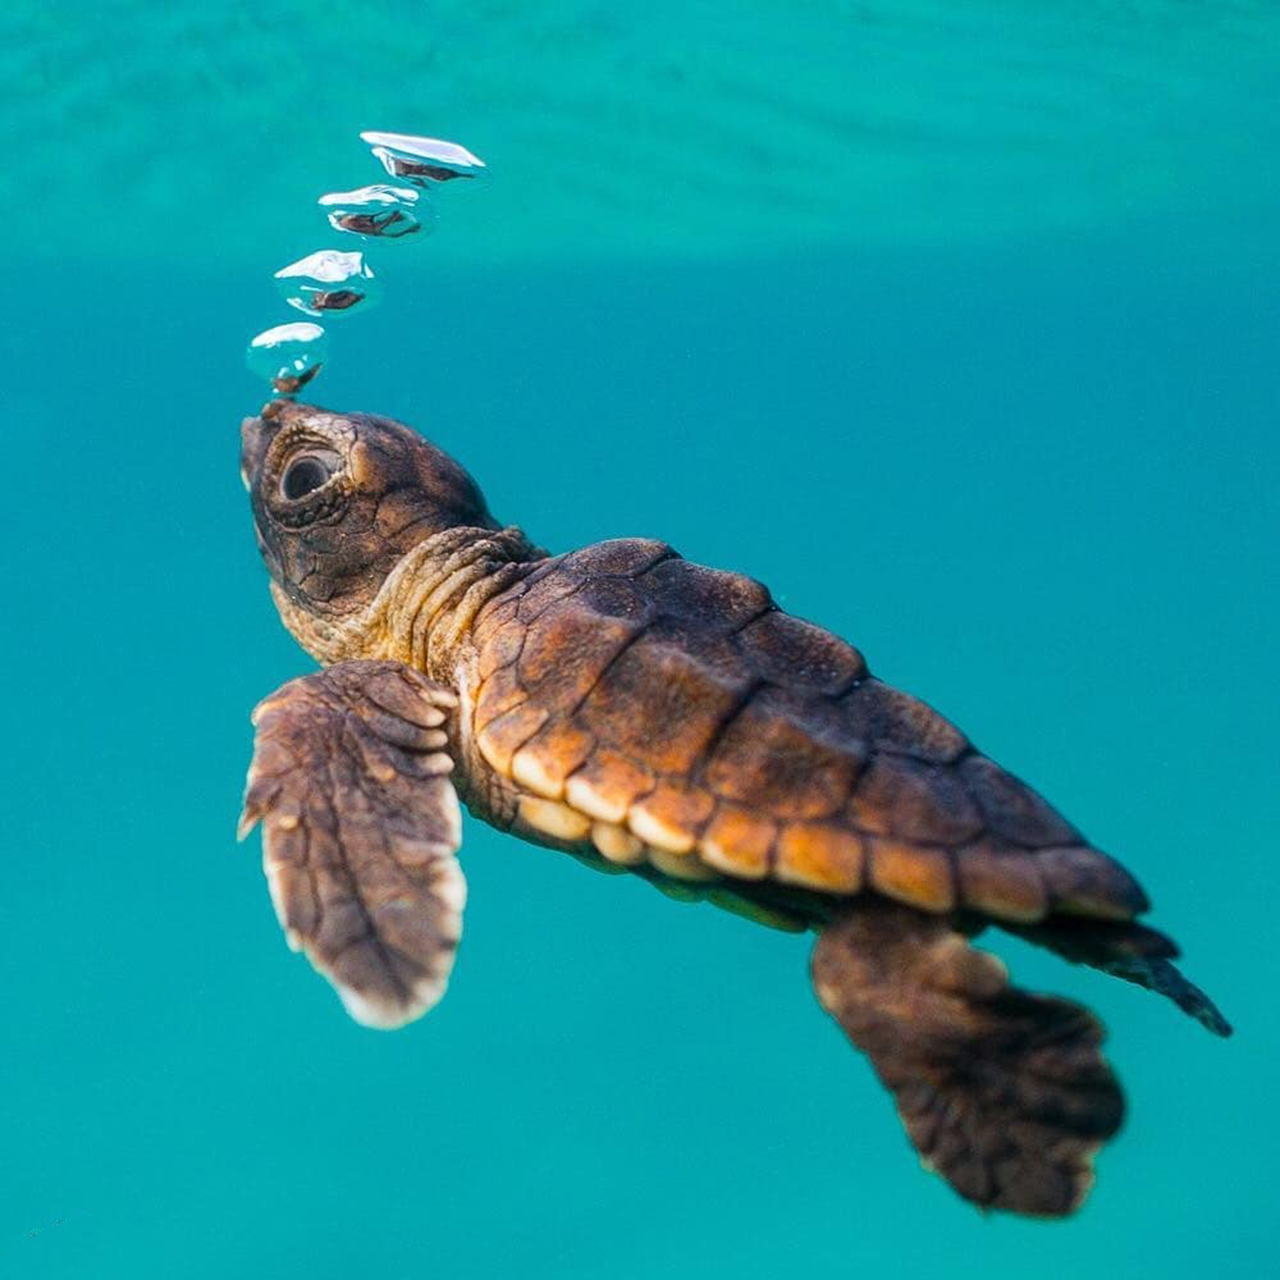 摄影欣赏:大海中的小海龟,冒泡的样子超可爱!